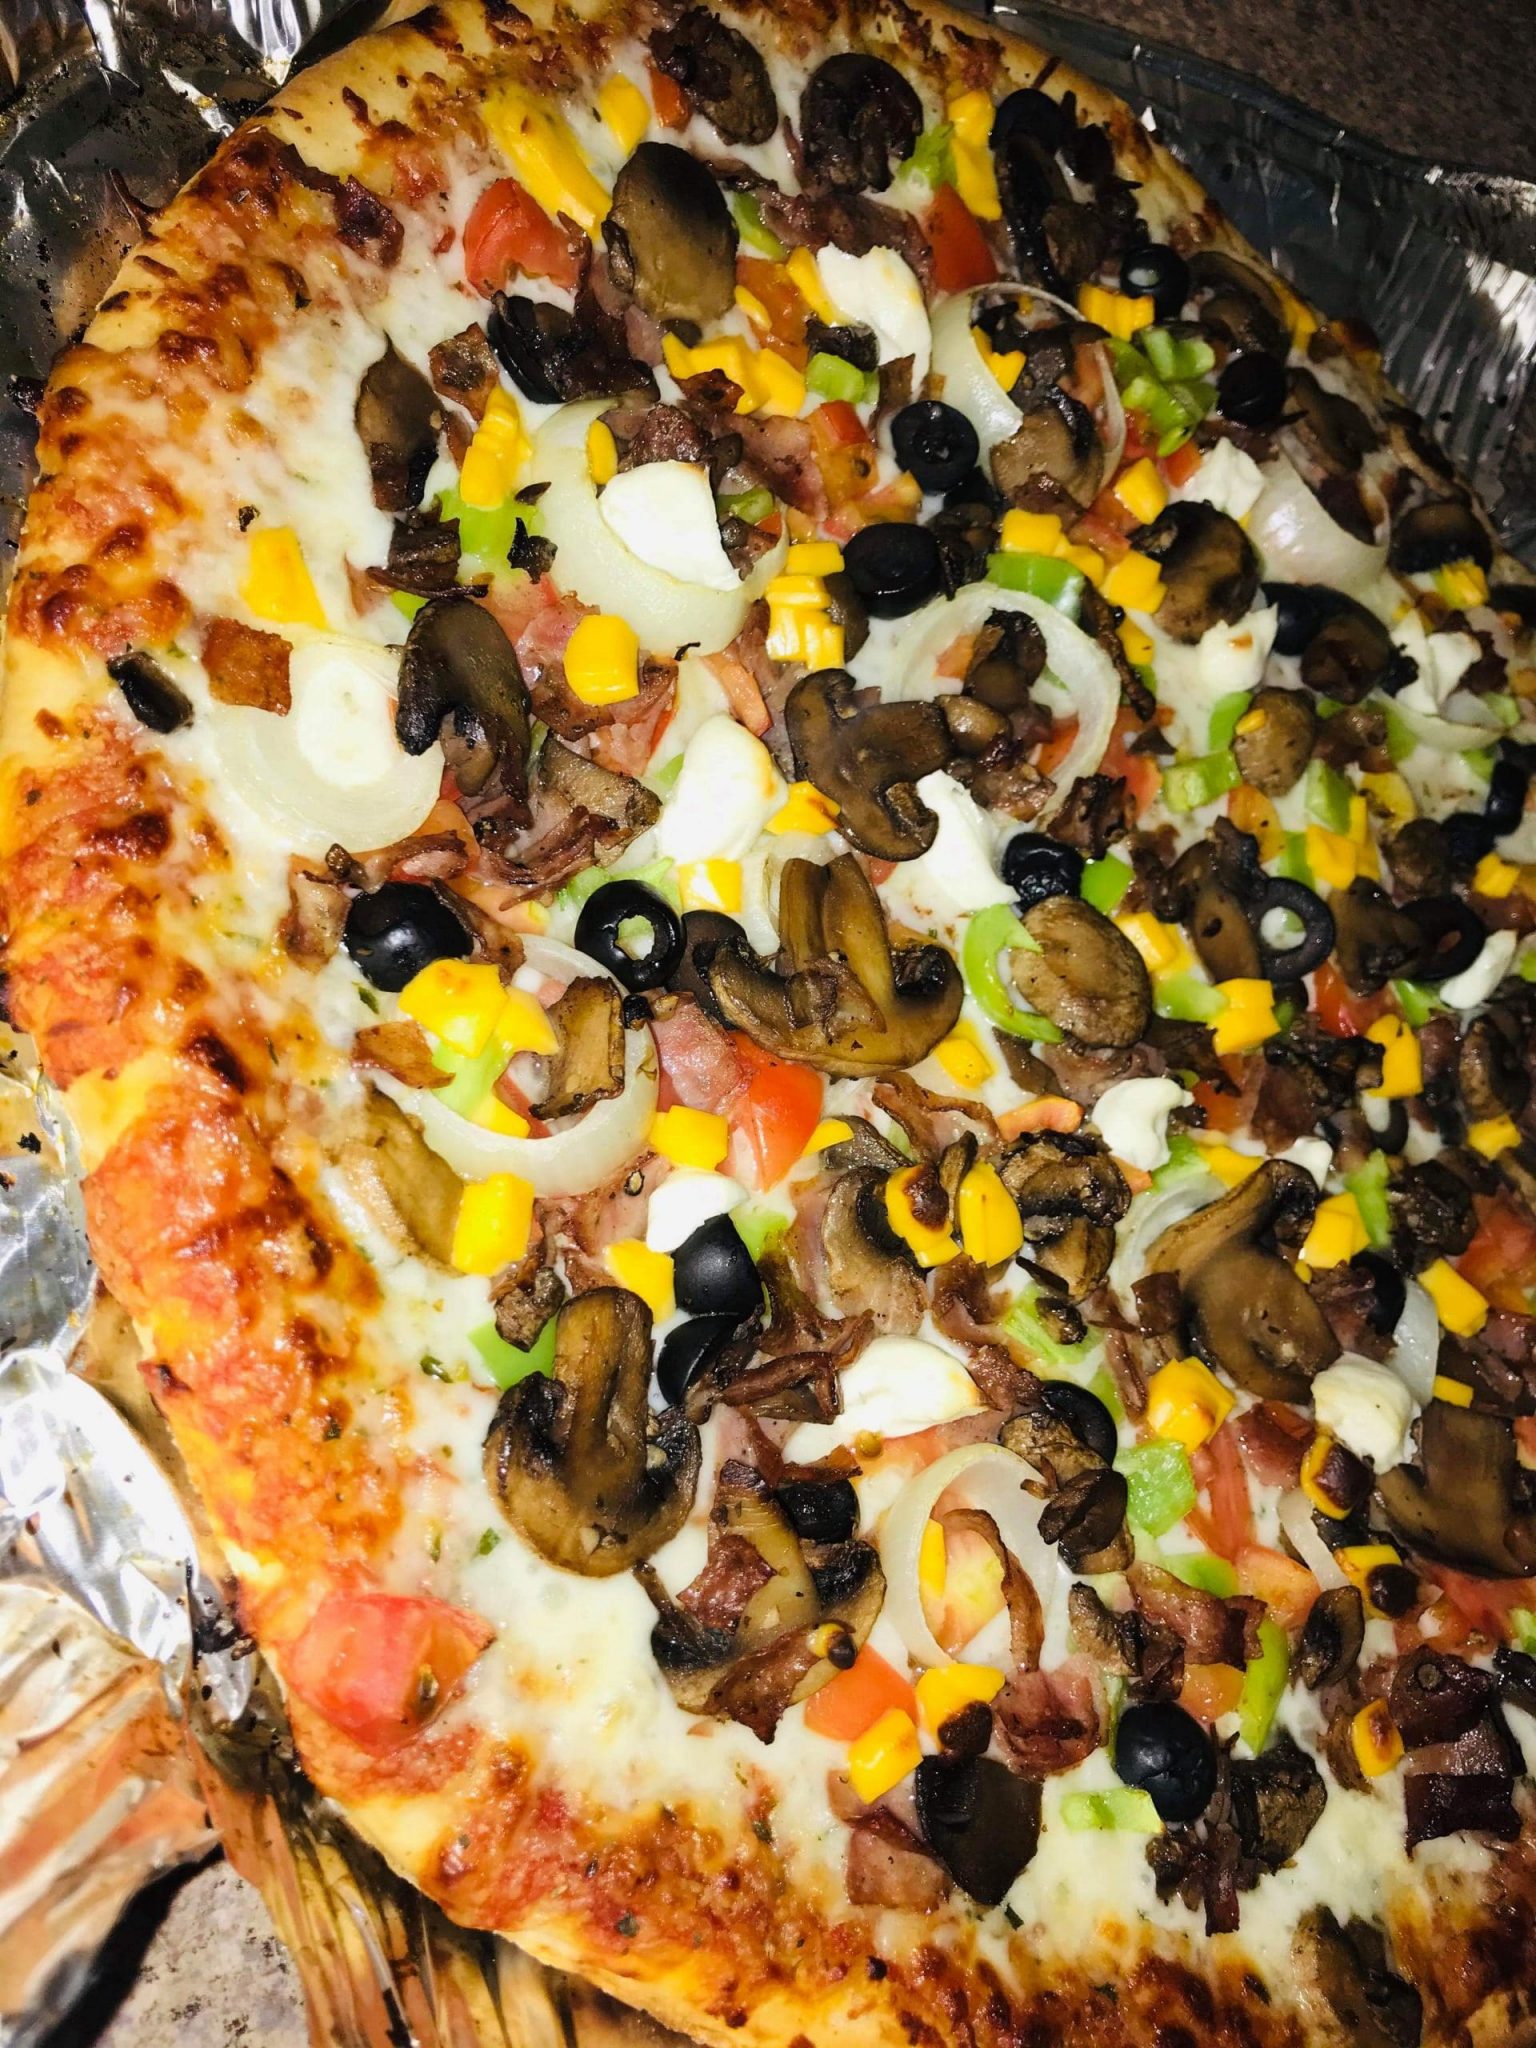 أسهل طريقة لعمل البيتزا بعجينة العشر دقائق وحشوات متنوعة للبيتزا!